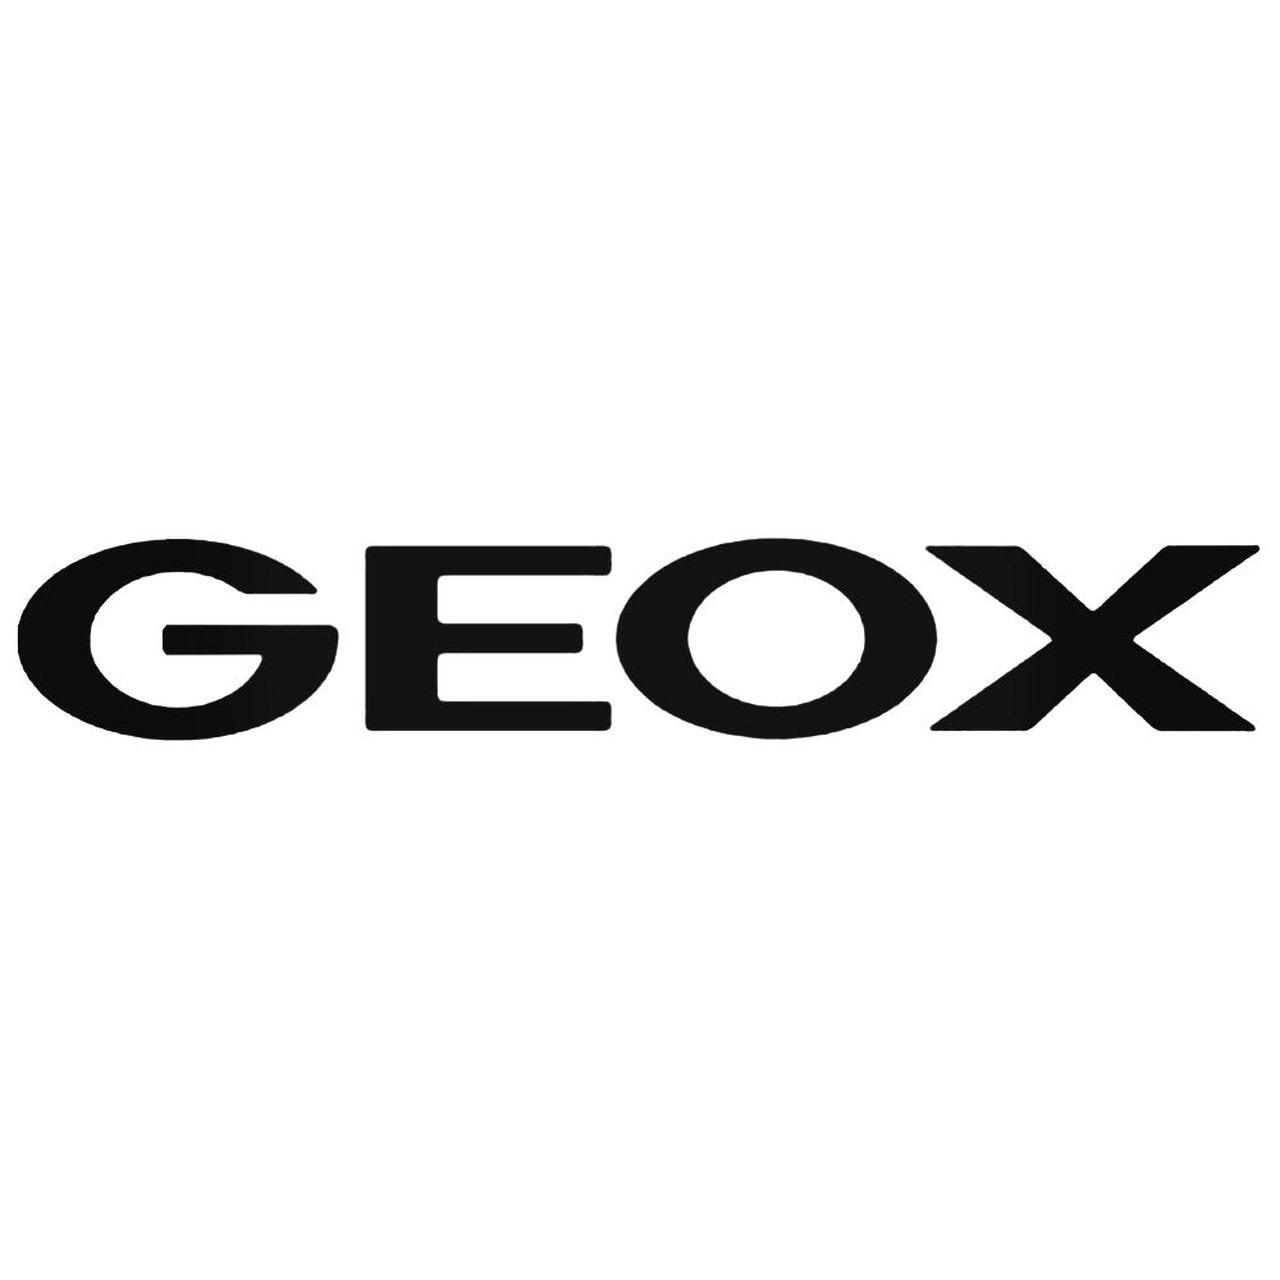 Geox Logo - Geox Logo Decal Sticker